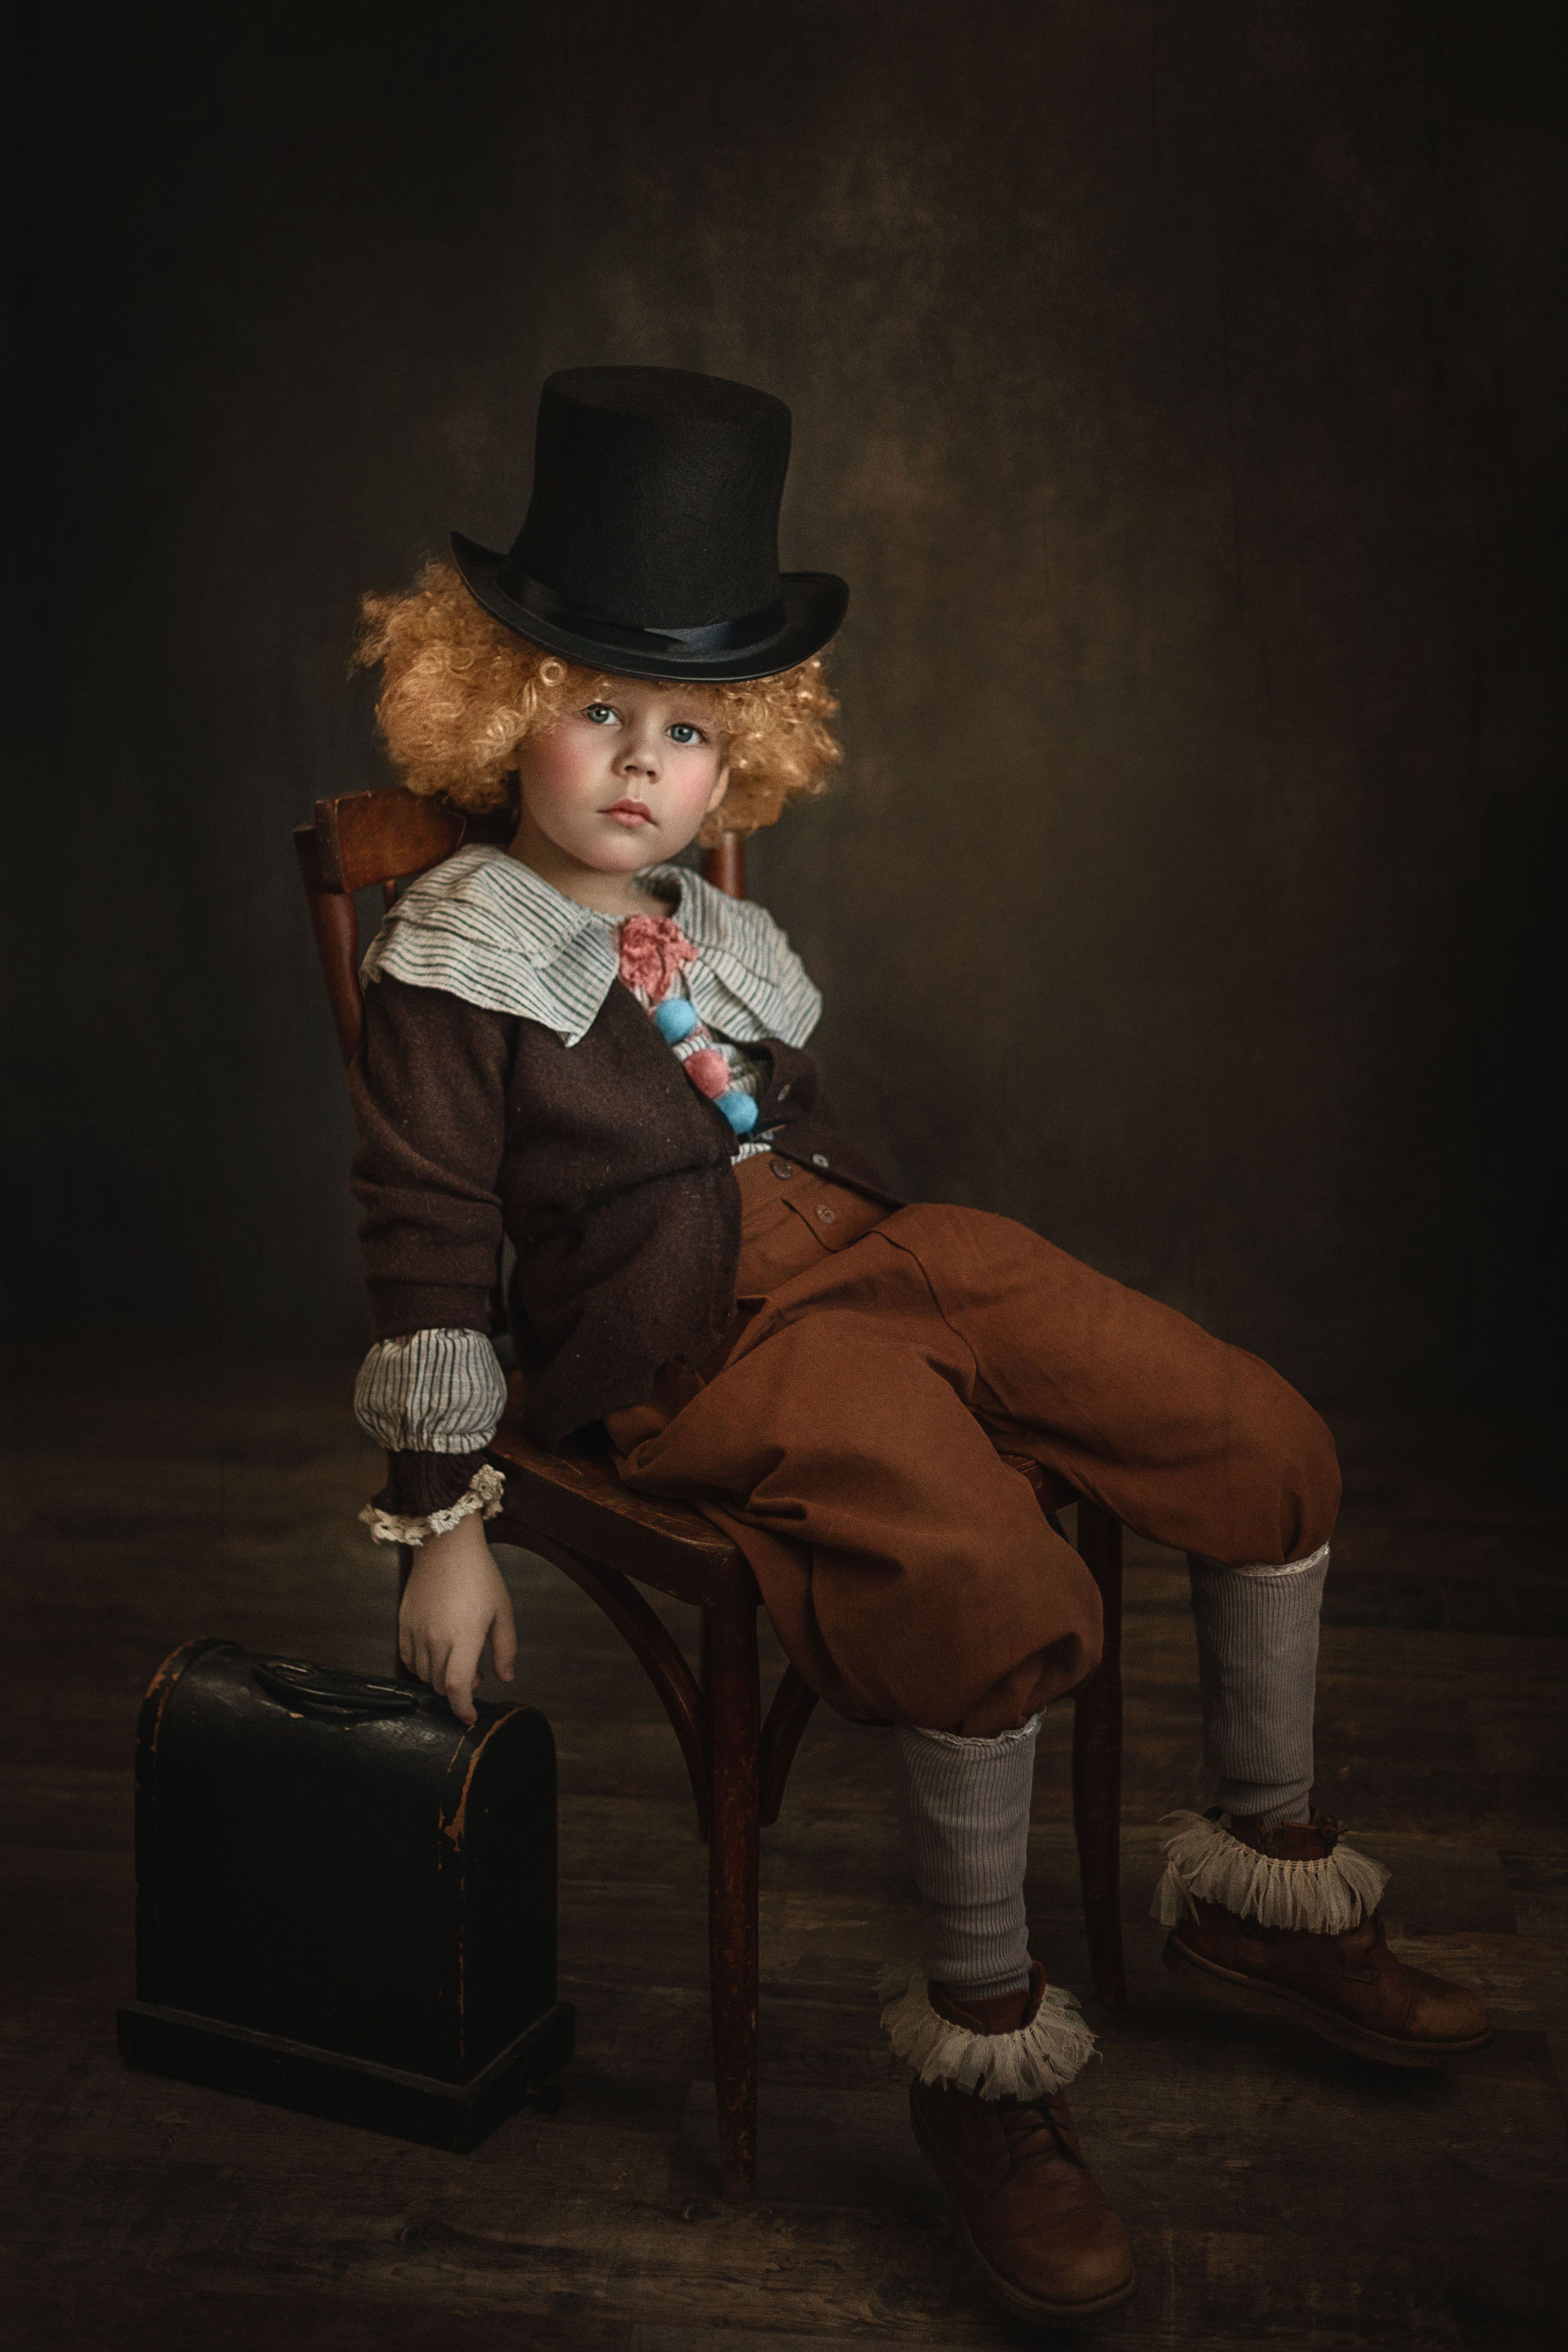 дети, детская фотография, постановочная фотография, портрет, мальчик. художественная фотография, кукла, Елена Чернигина